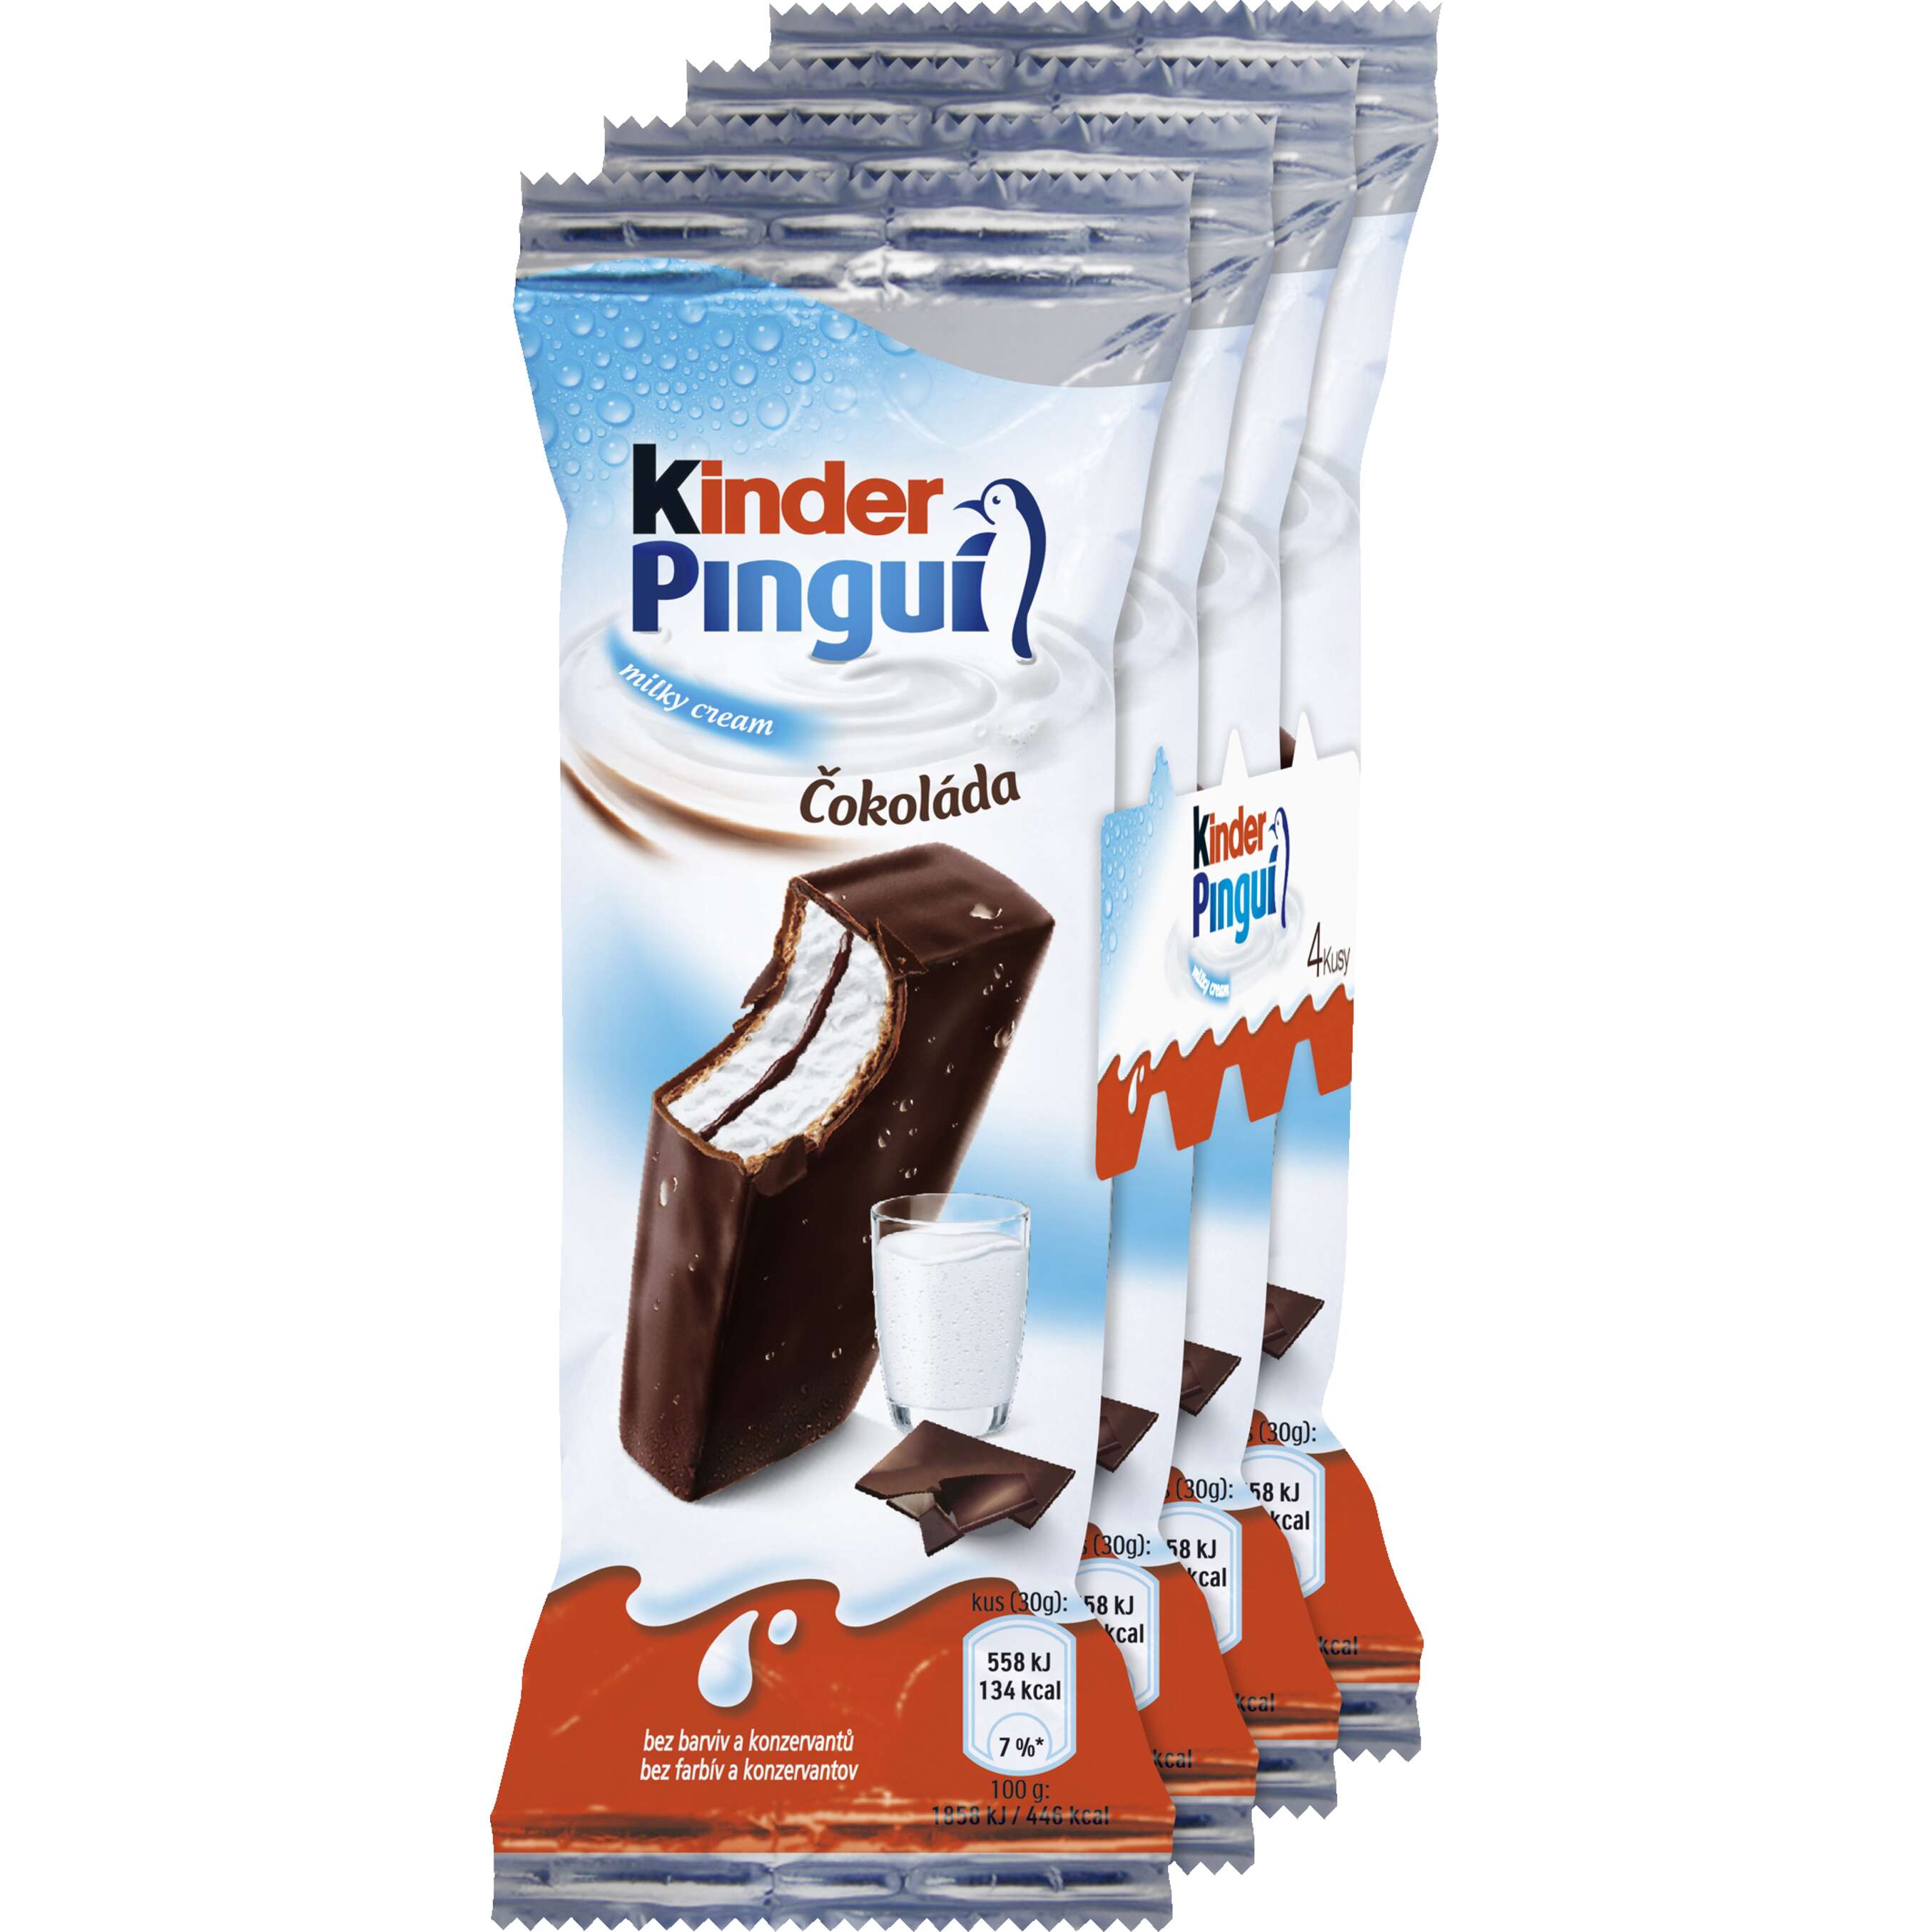 Zobrazit nabídku Kinder Pinguí 4x30 g